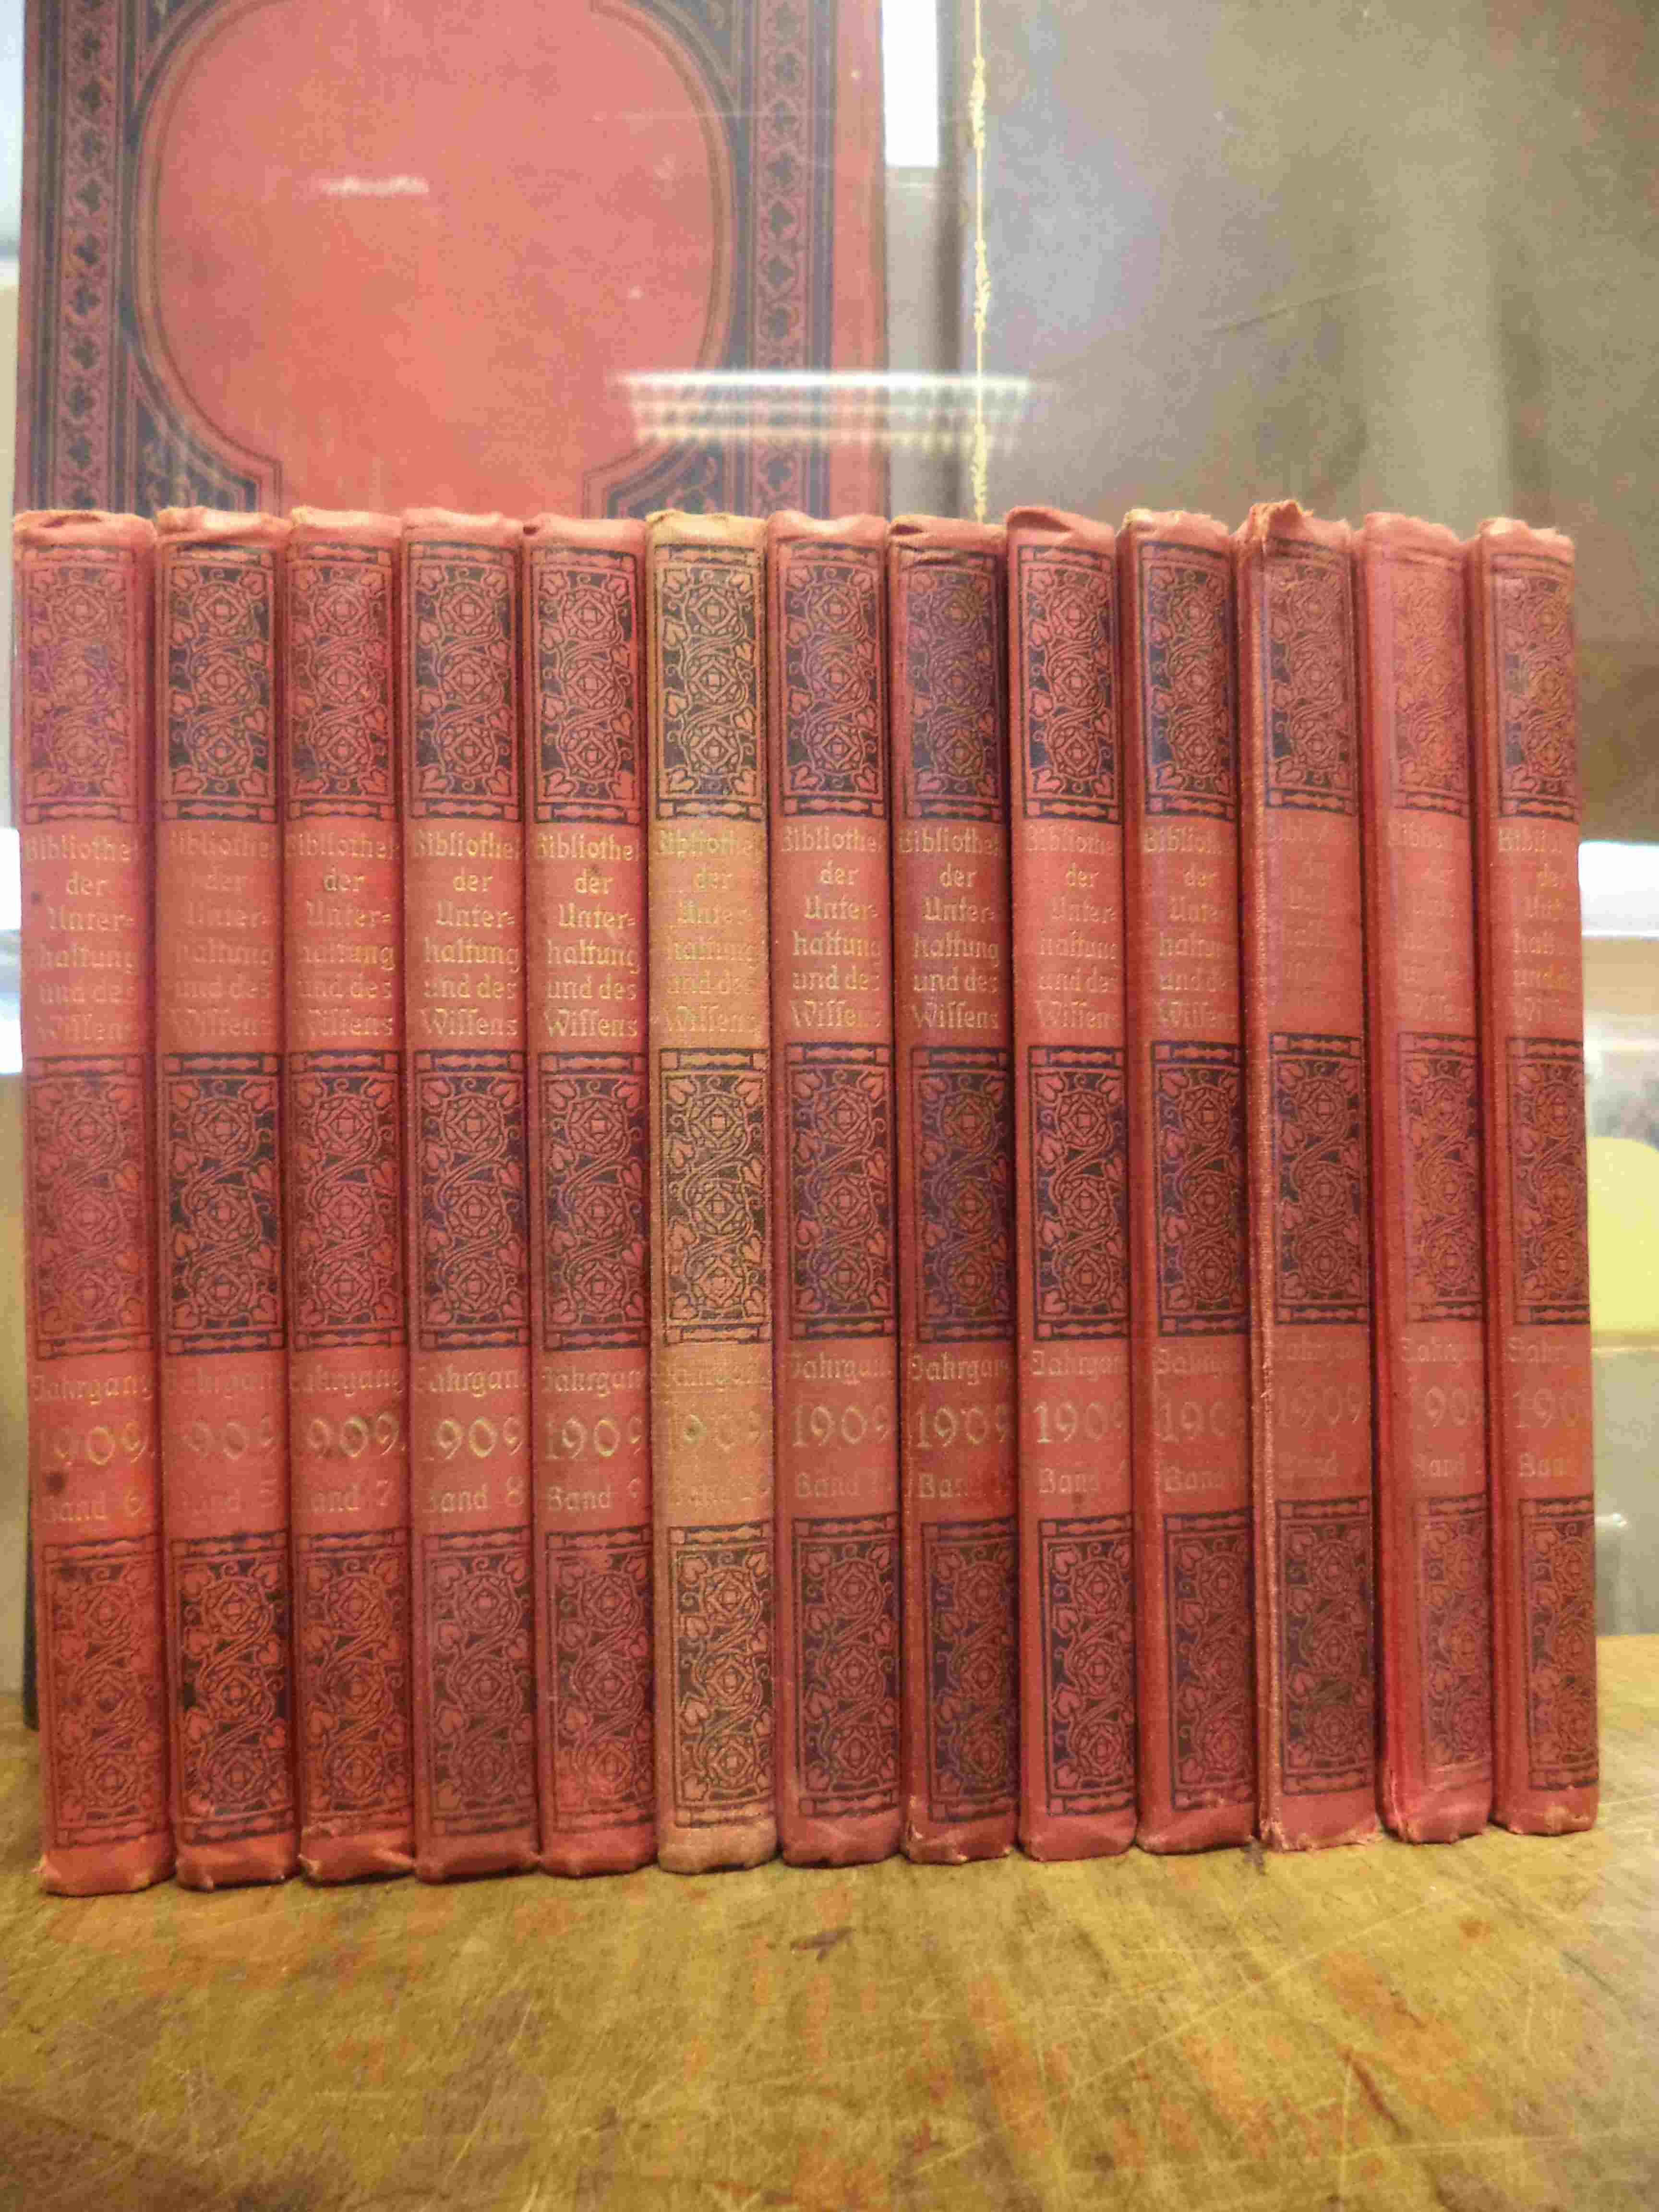 Freund, Bibliothek der Unterhaltung und des Wissens, Jahrgang 1909, 13 Bände (=